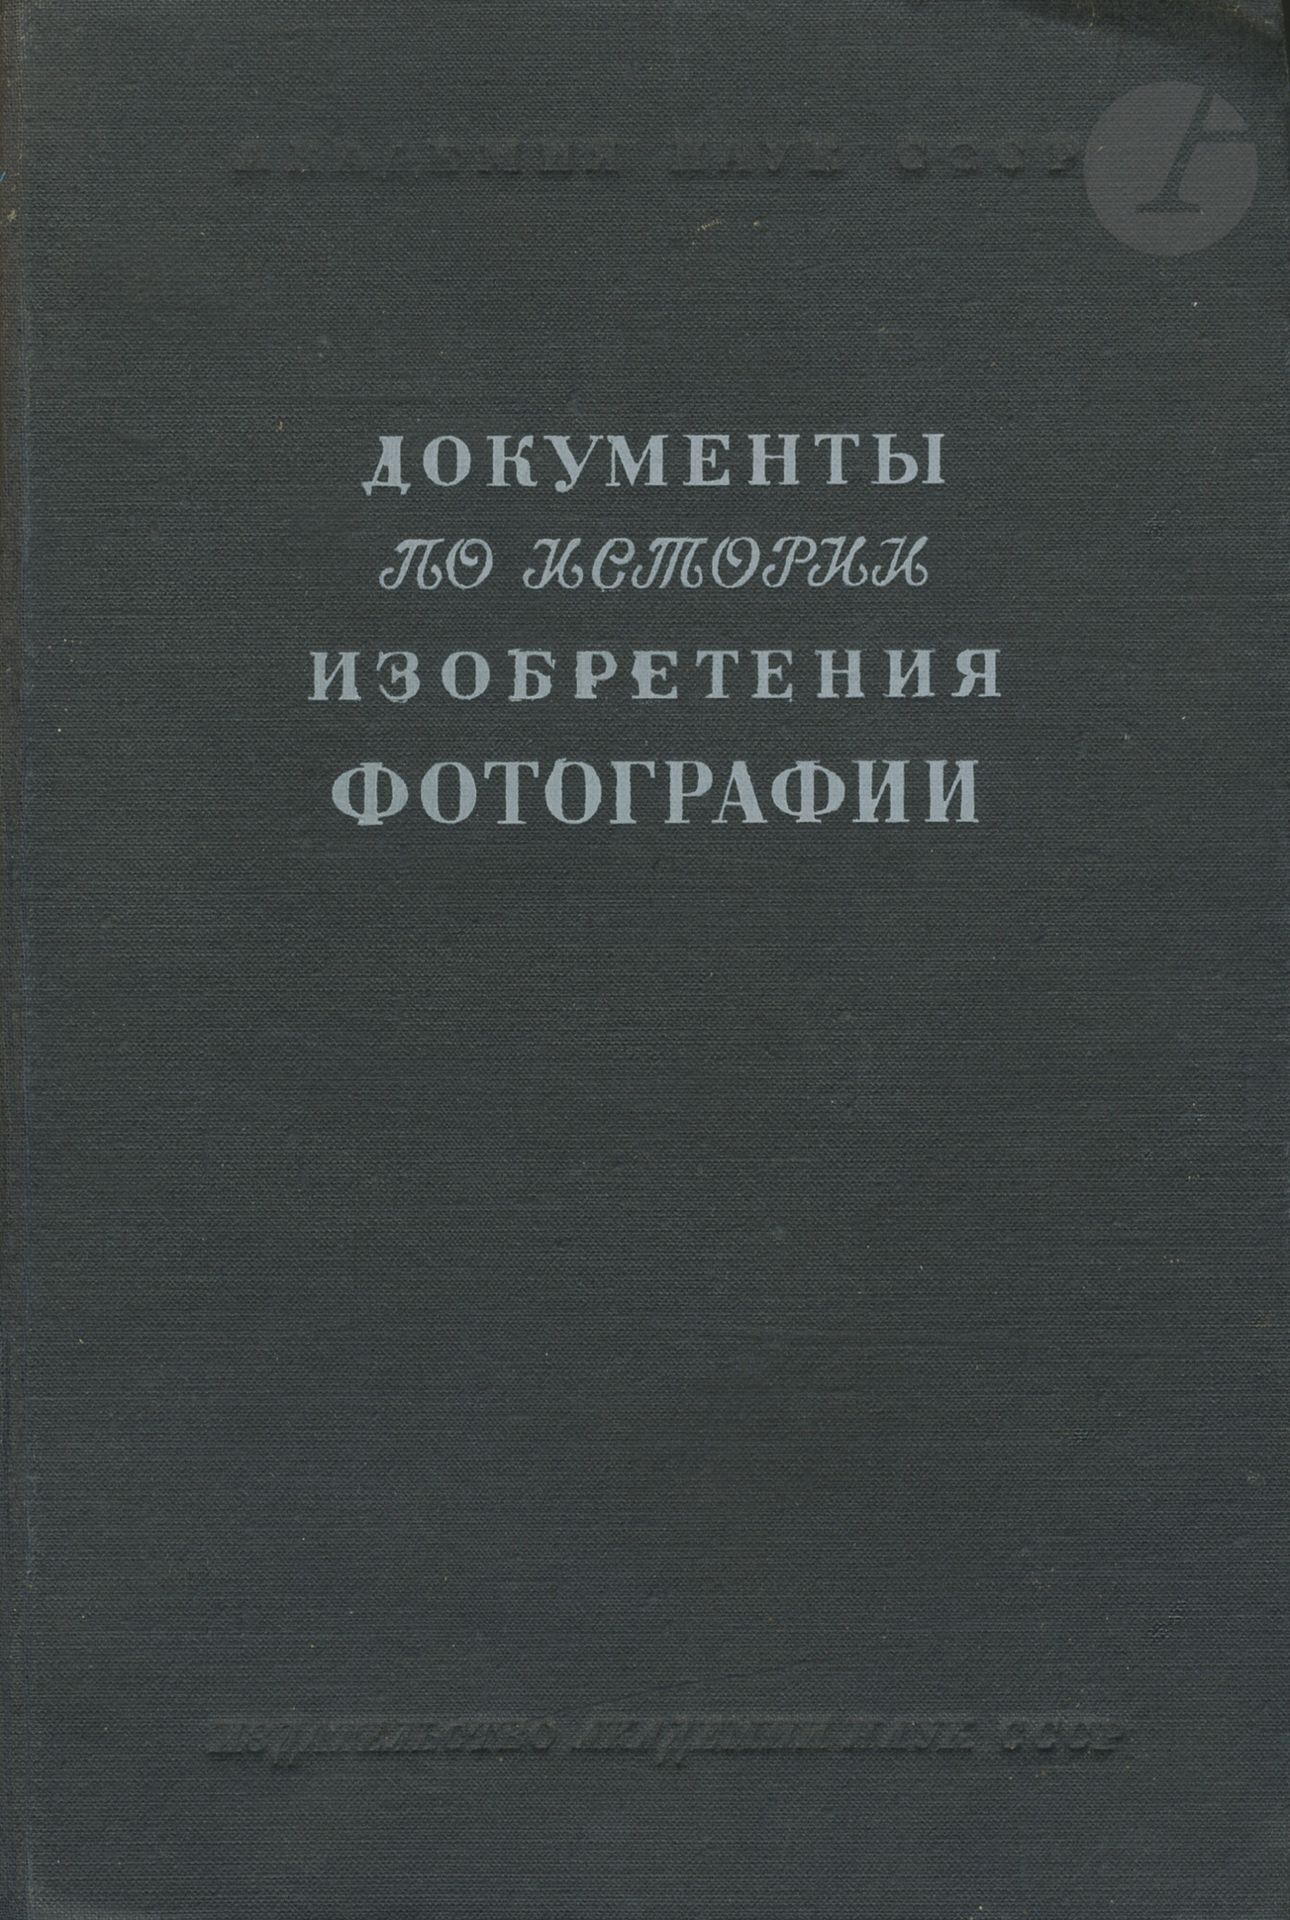 Null CHIBISSOV, K.V. [
Documenti sulla storia dell'invenzione della fotografia.
&hellip;